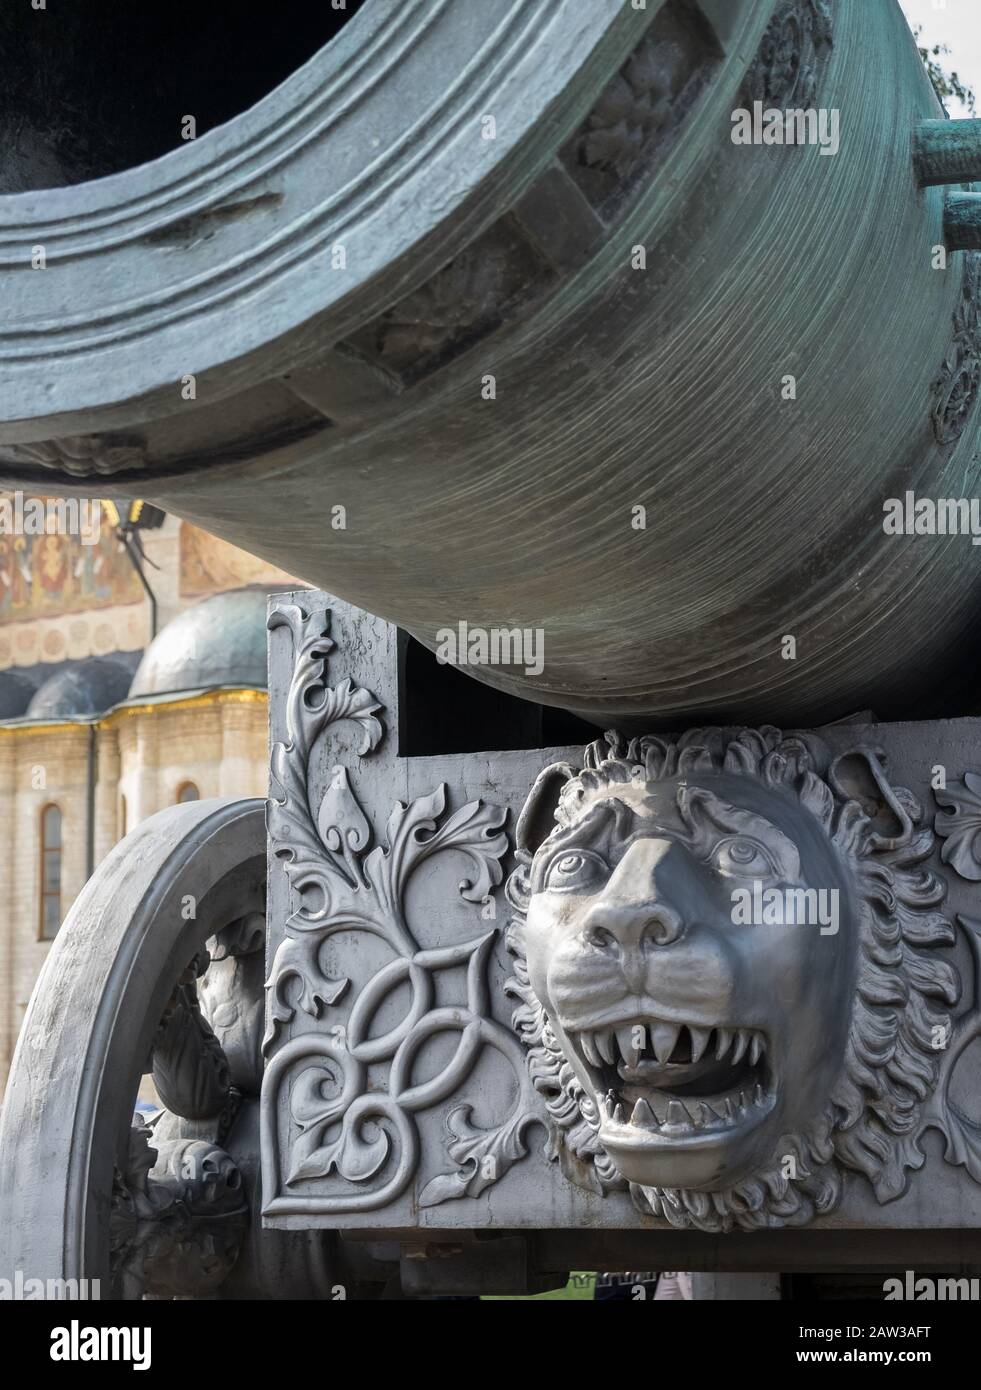 El Tsar Cannon, un cañón de bronce de más de 5 metros de largo con un calibre de 890 mm, y un peso de más de 39 toneladas, el Kremlin, Moscú, Rusia. Foto de stock